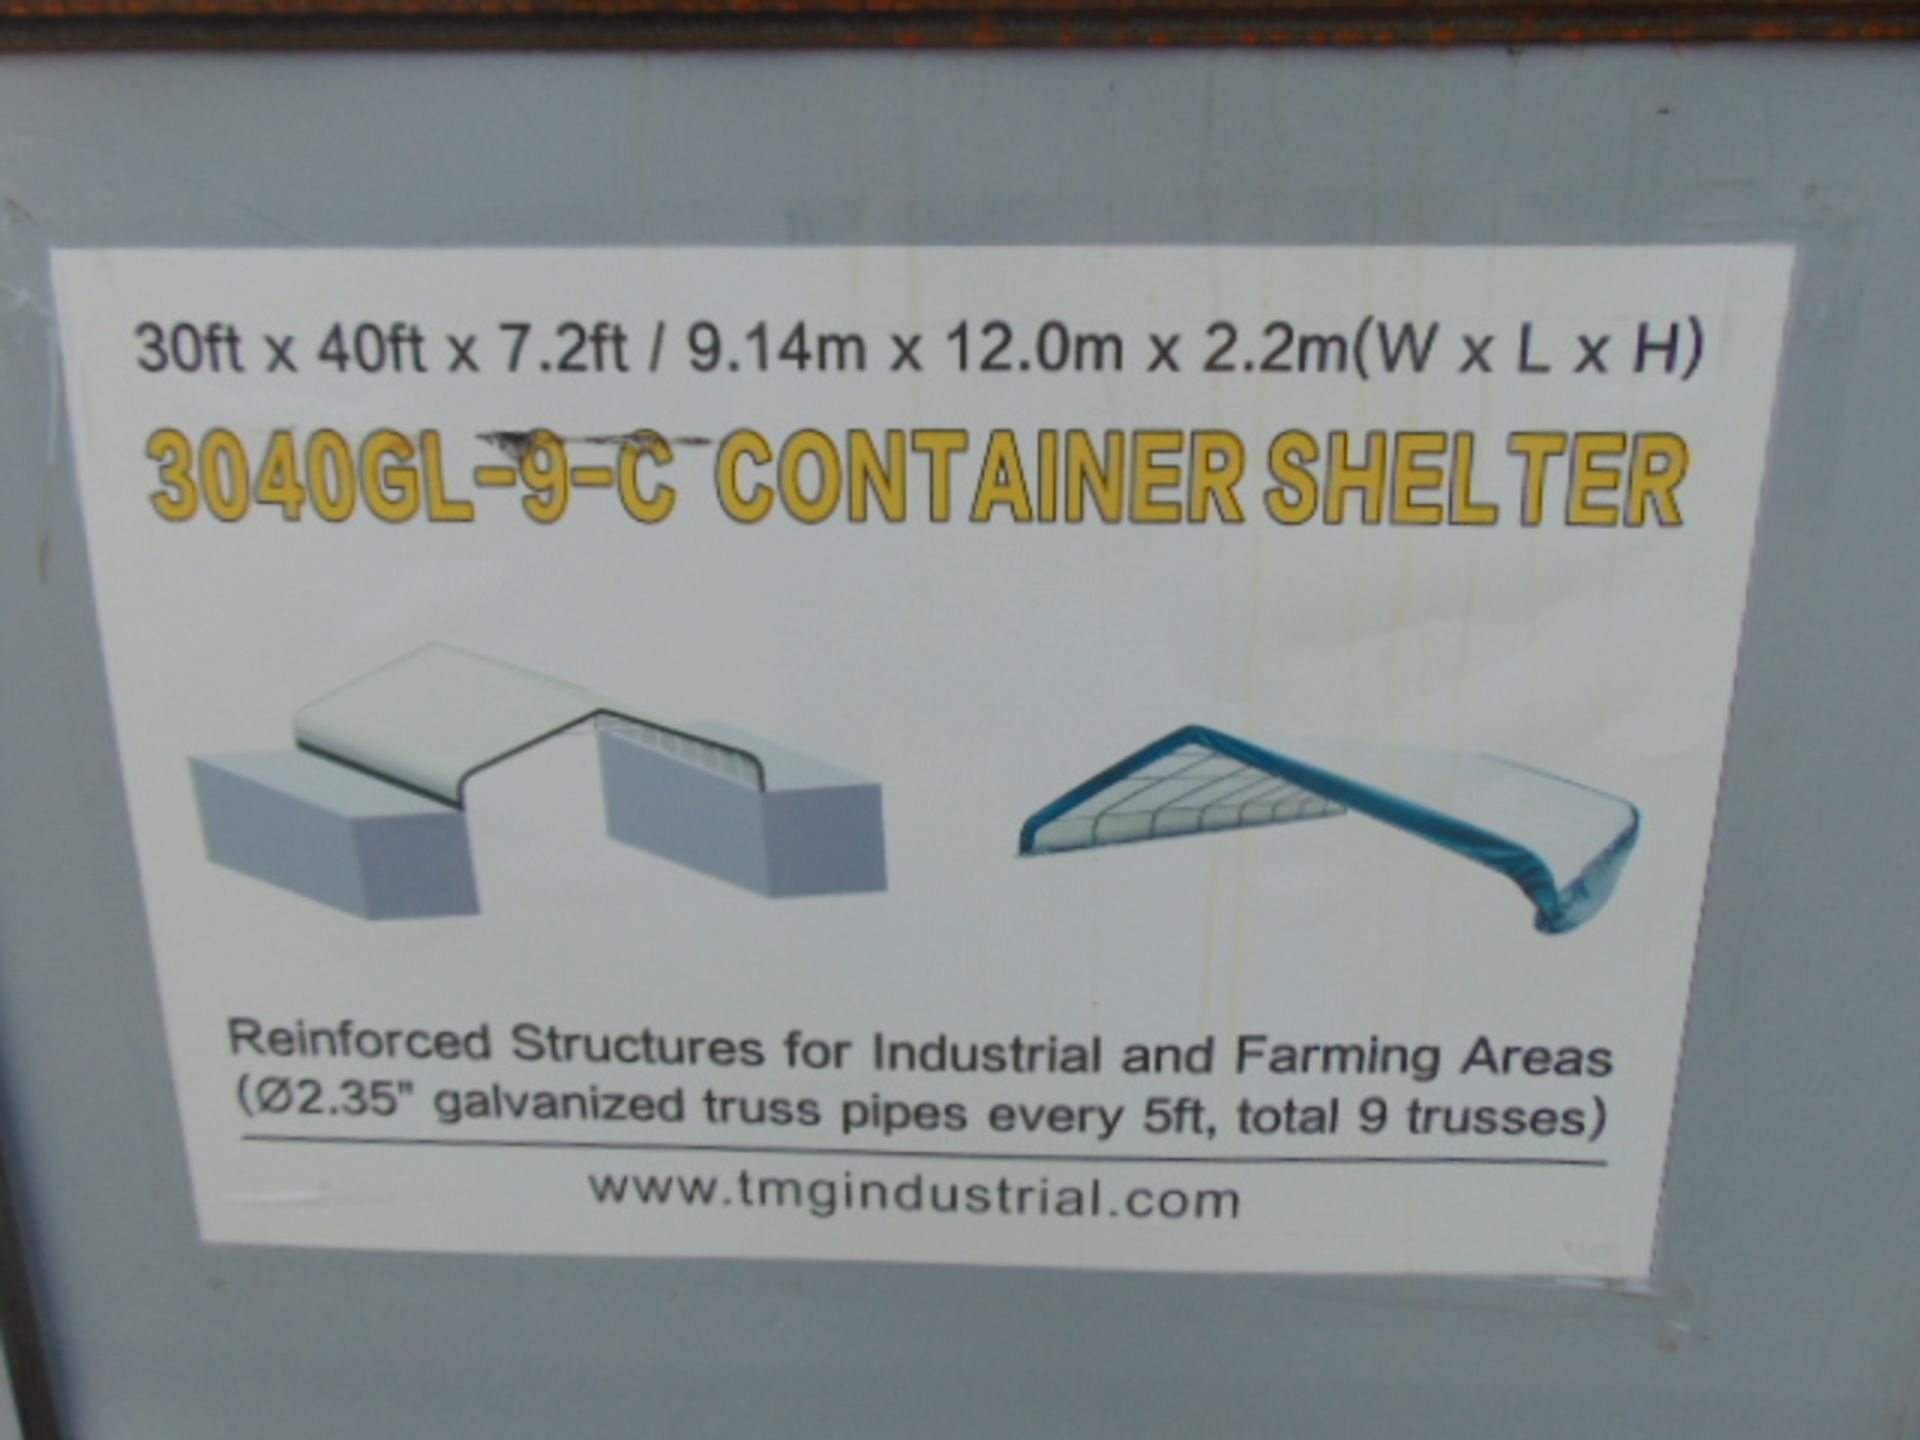 Container Shelter 30'W x 40'L x 7.2' H P/No 3040GL-9-C - Image 4 of 6